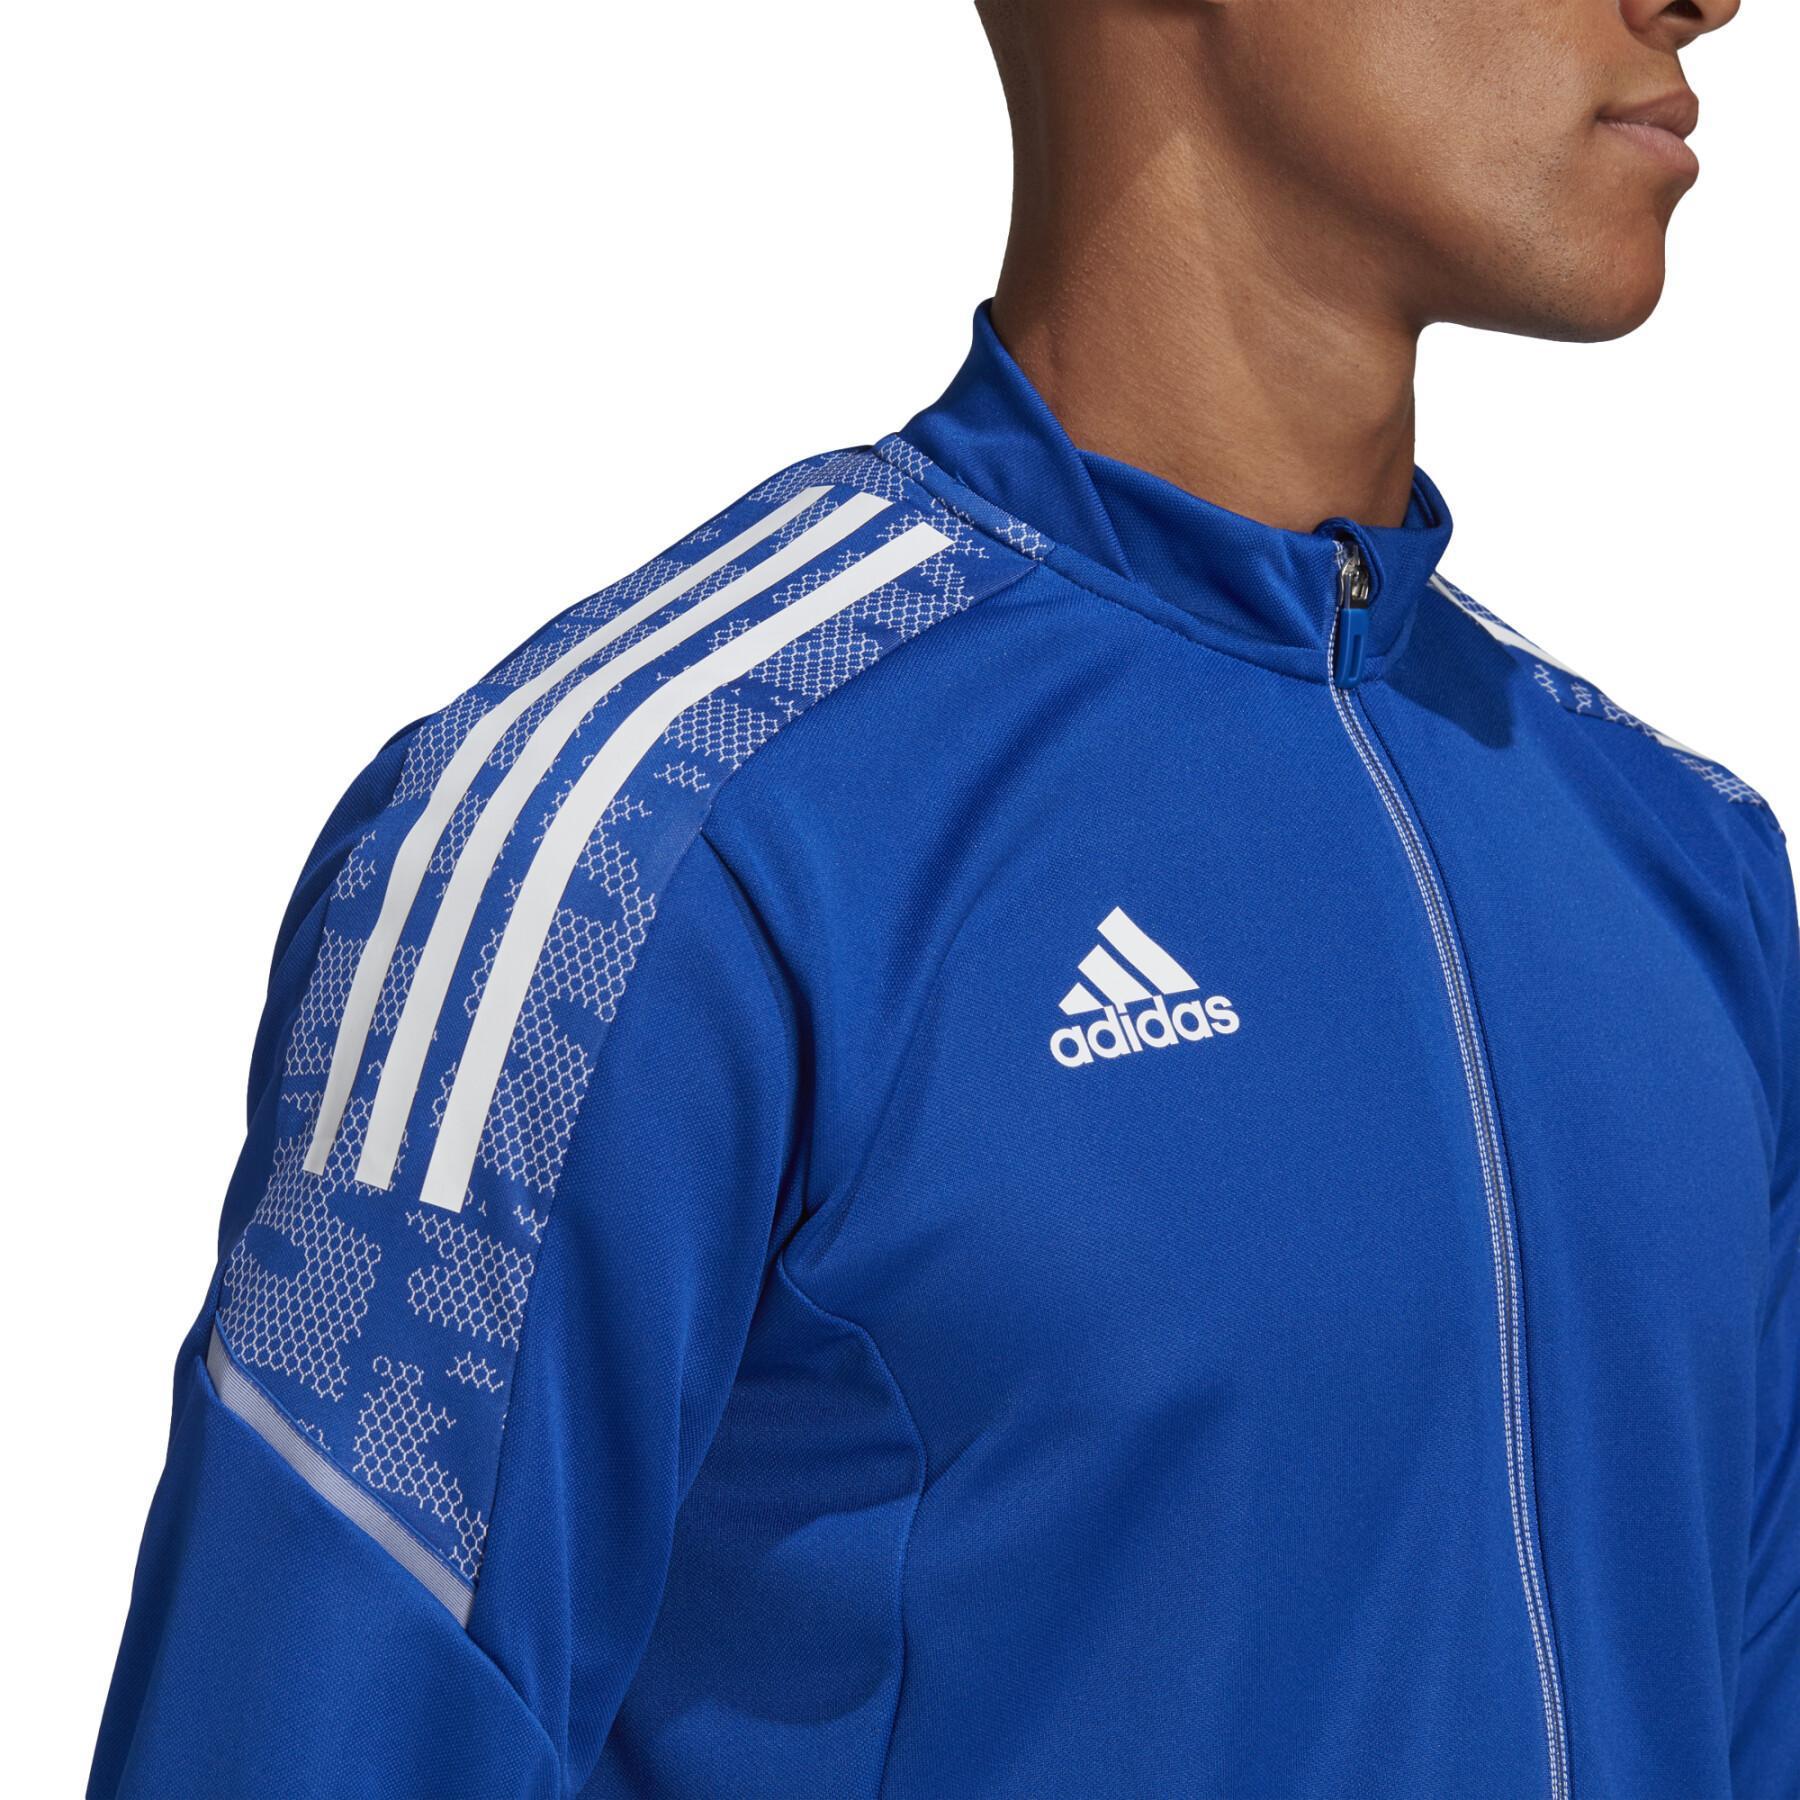 Олимпийка мужская Adidas GH7129 синяя XS